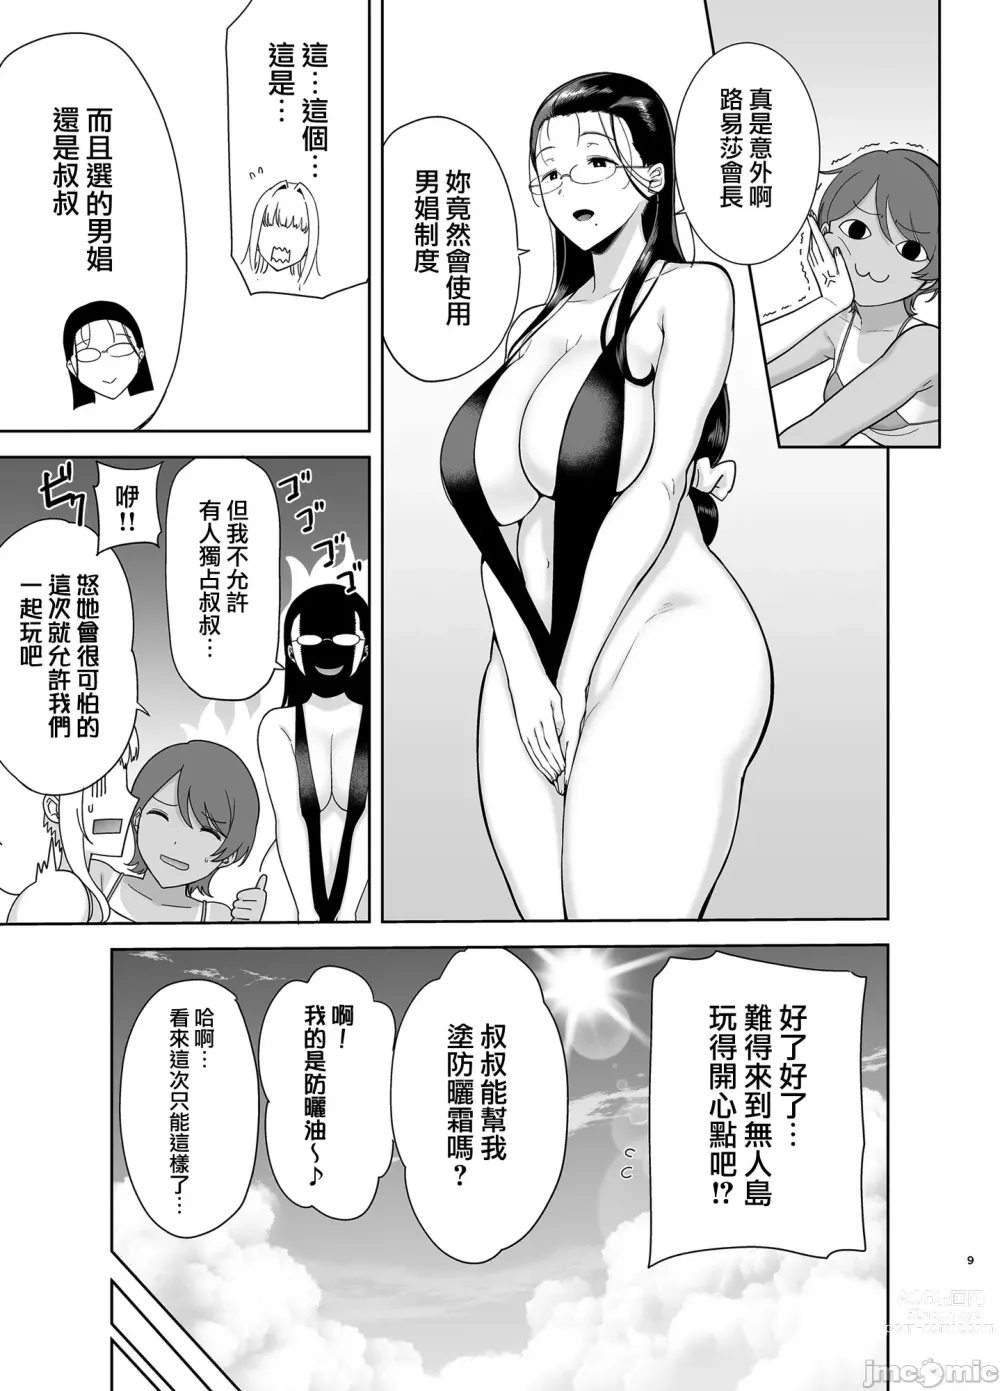 Page 9 of manga Seika Jogakuin Koutoubu Kounin Sao Oji-san 6